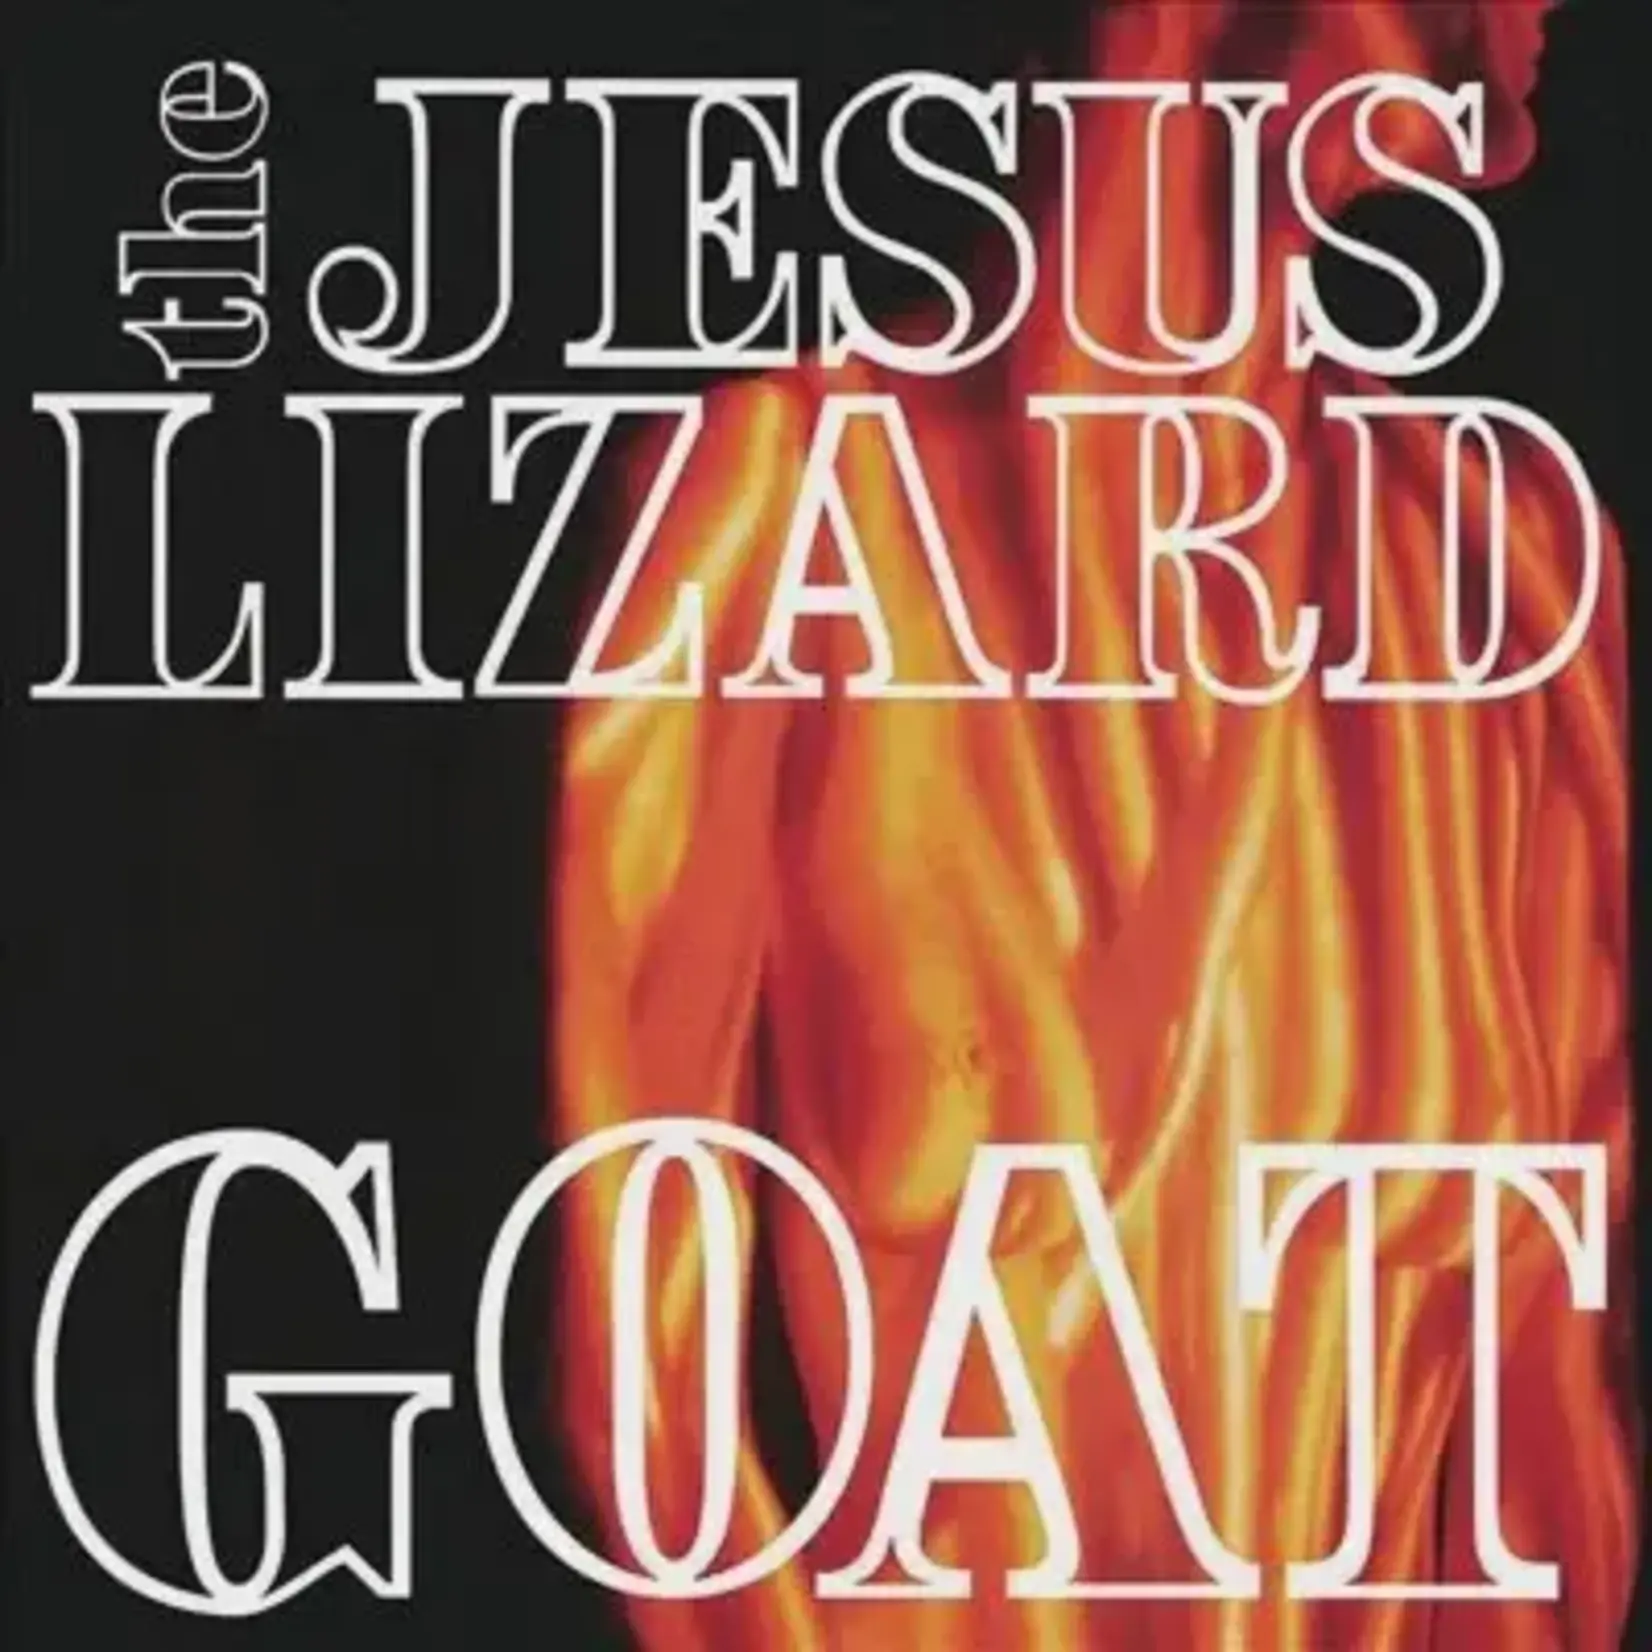 [New] Jesus Lizard - Goat (180g, white vinyl)